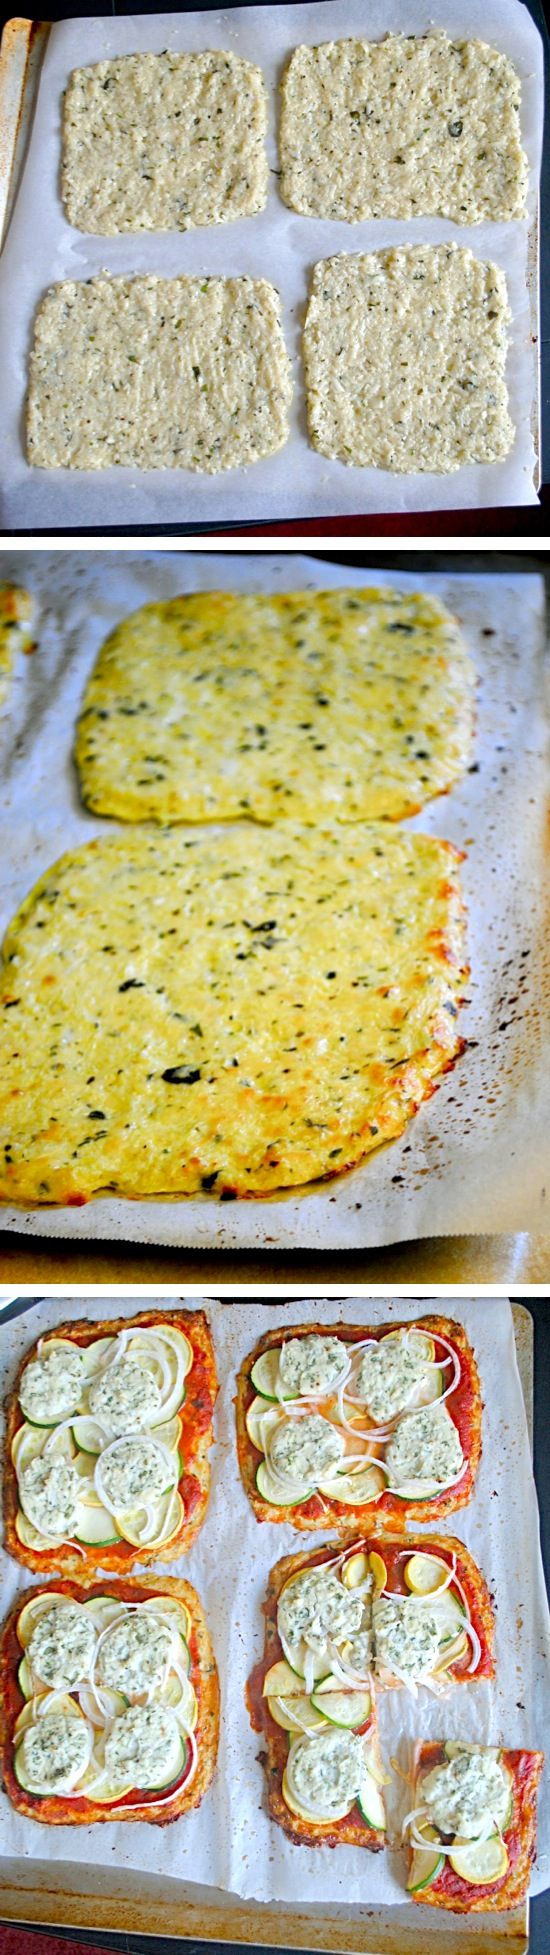 Basil Cauliflower Pizza Crust Recipe